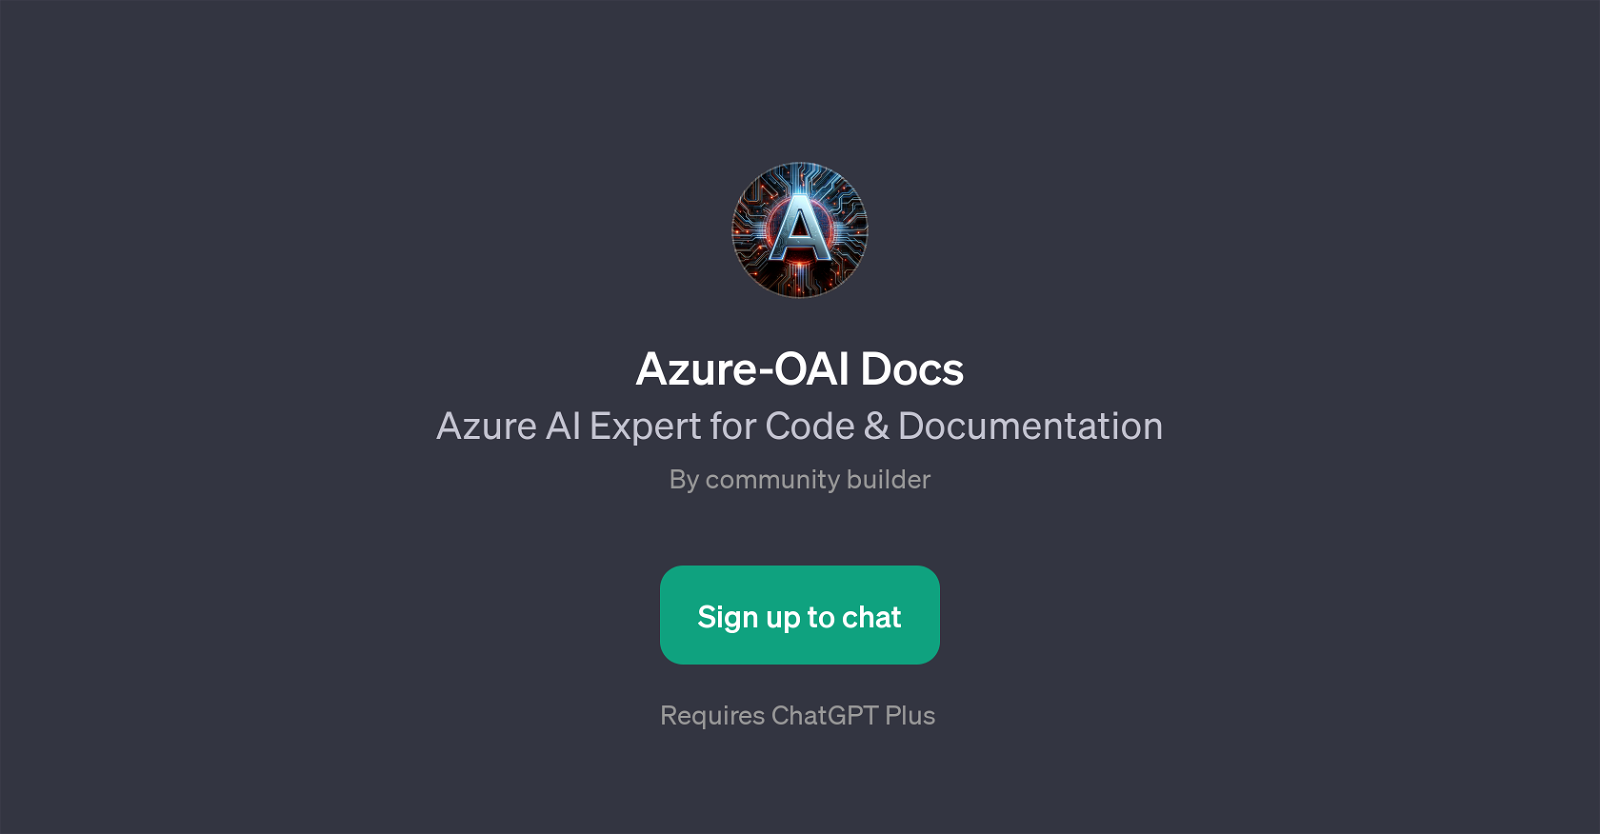 Azure-OAI Docs website